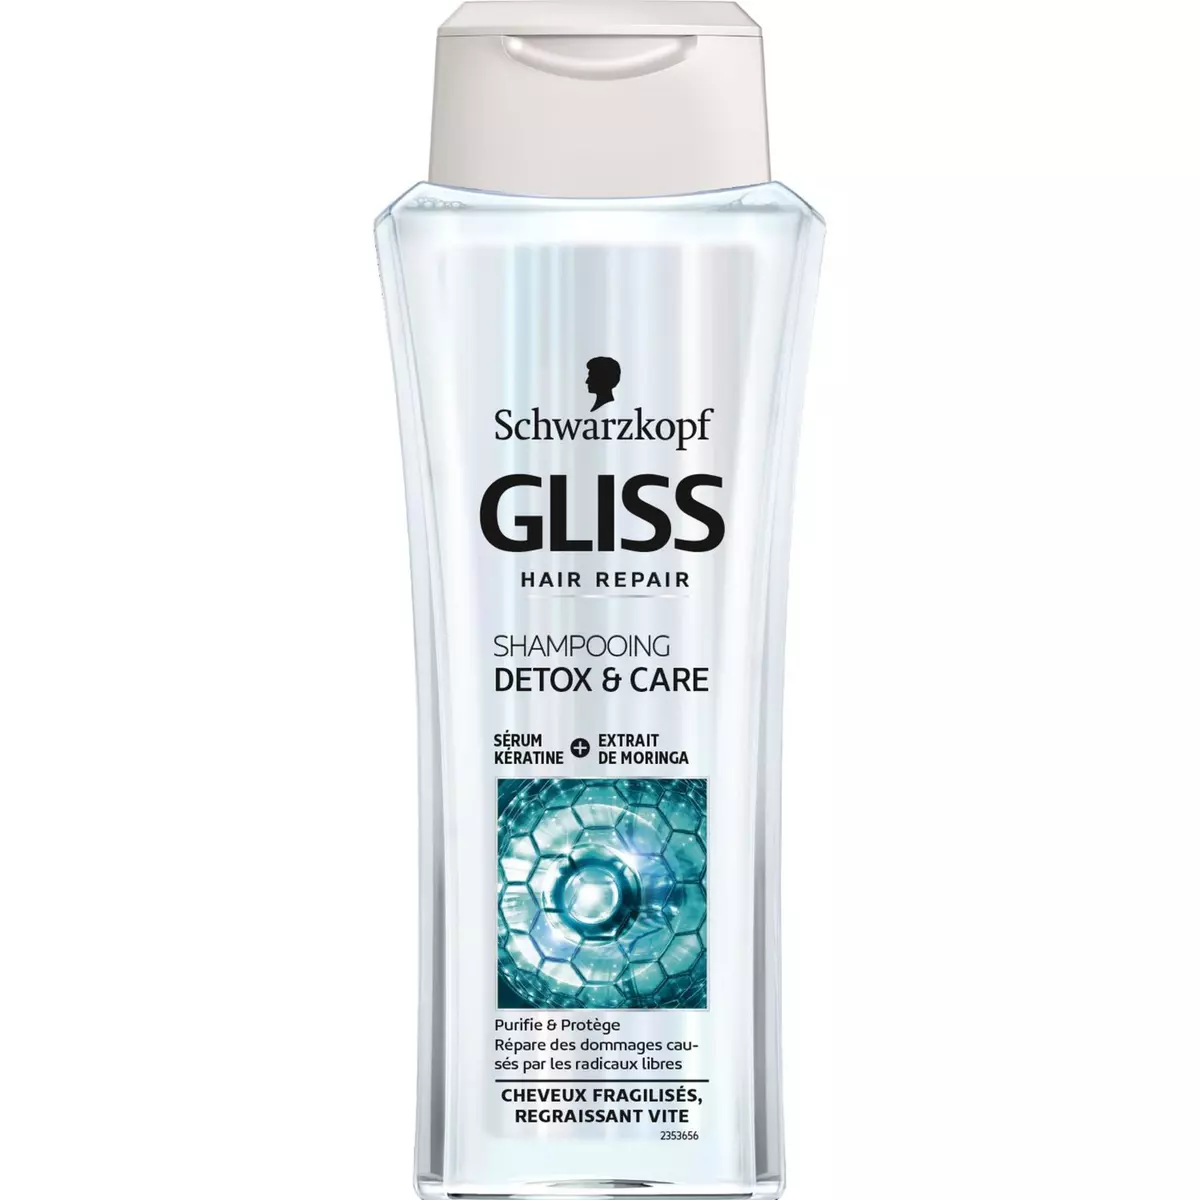 GLISS Shampooing detox & care cheveux fragilisés, regraissant vite 250ml